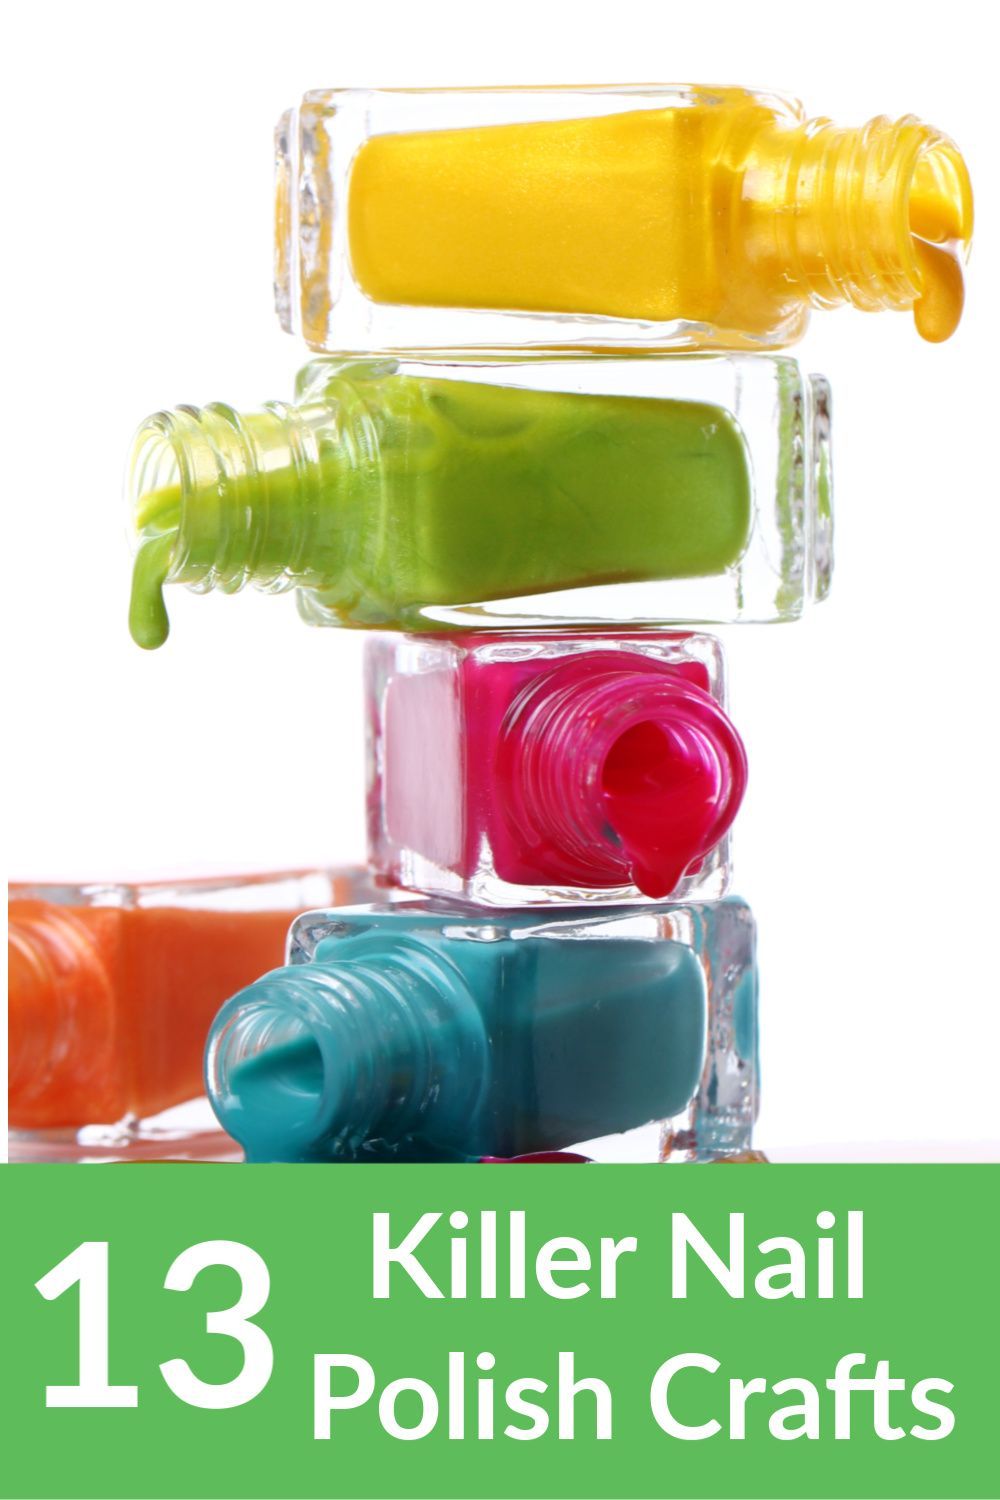 13 Killer Nail Polish Crafts You Had No Idea You Could Make! -   18 diy projects Awesome nail polish ideas